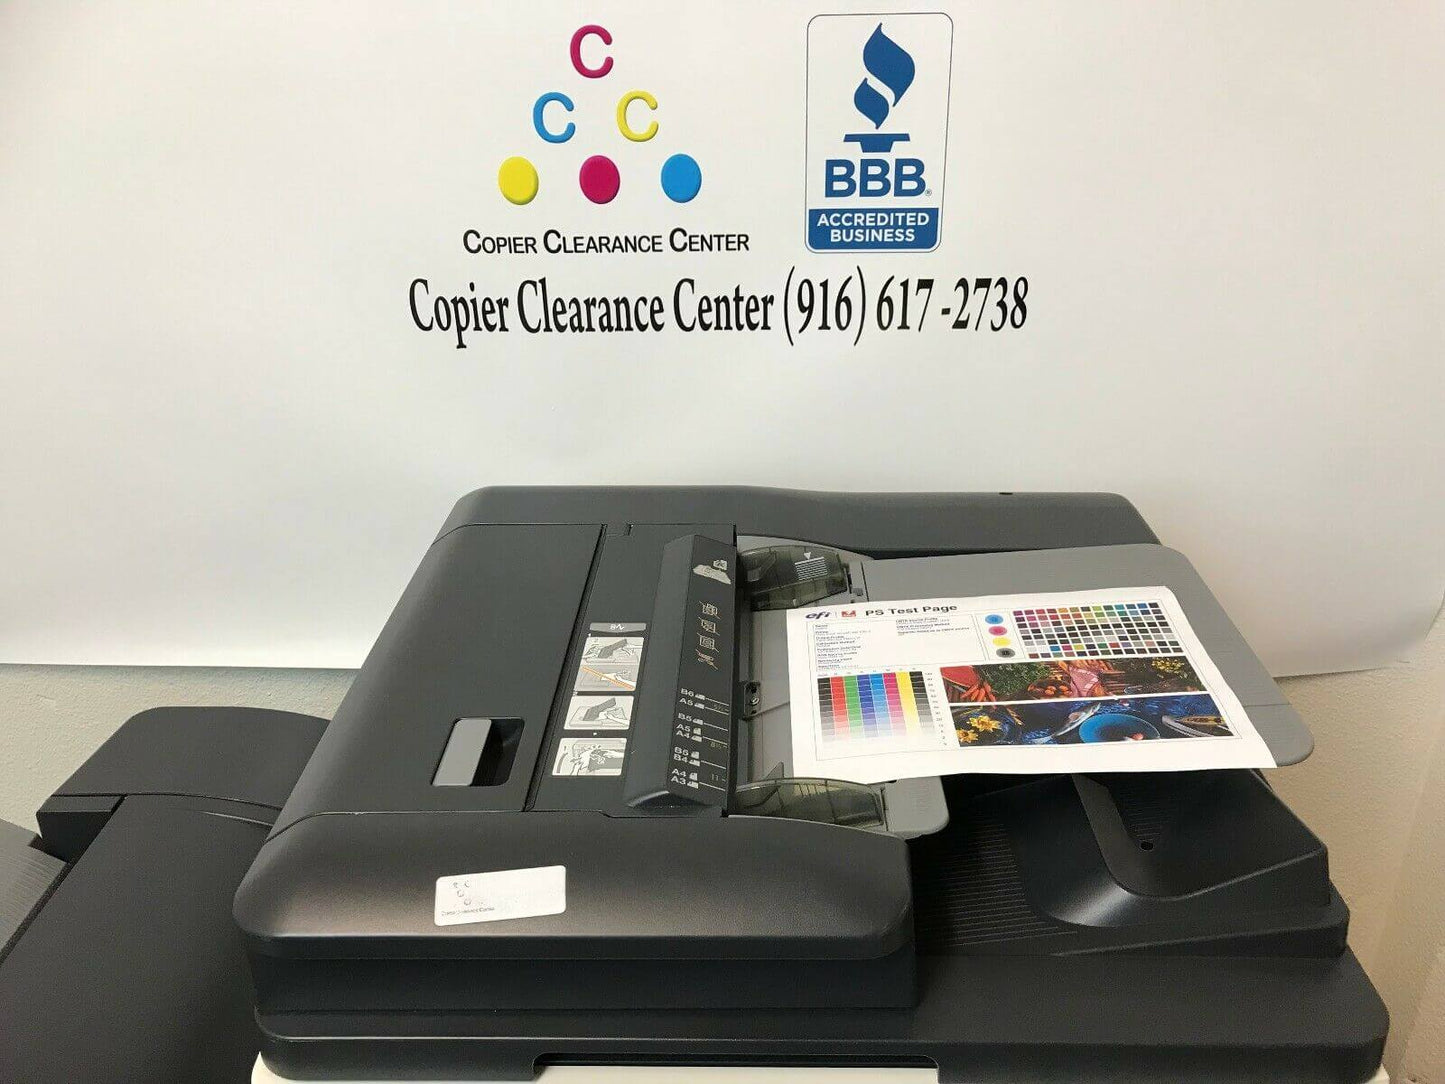 Konica Minolta Bizhub C654e Color Copier Printer Scanner Booklet Fiery Low 222k - copier-clearance-center